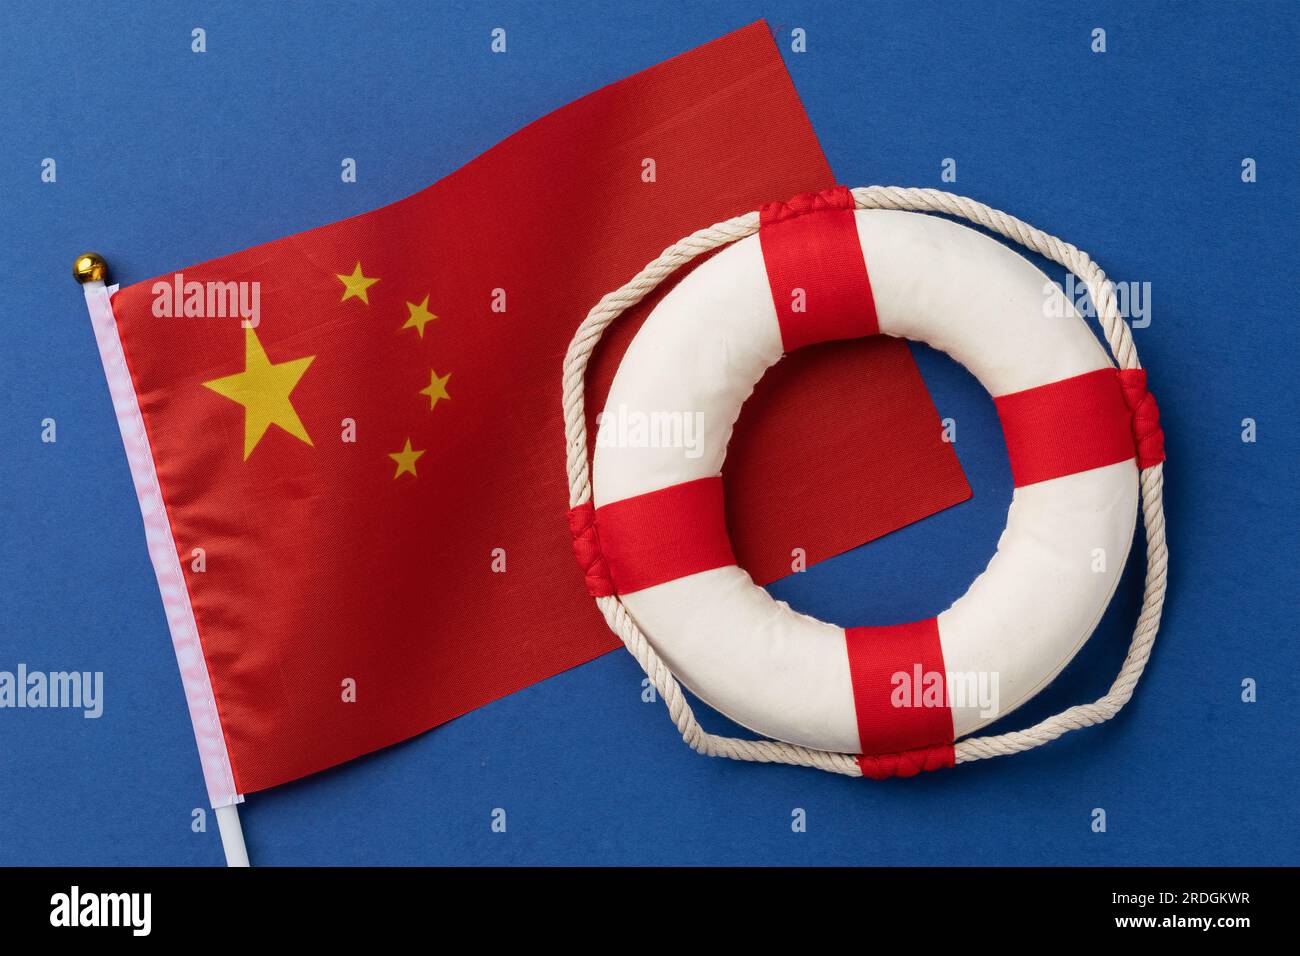 Drapeau chinois et bouée de sauvetage sur fond bleu, un concept sur le thème de l'aide de la Chine Banque D'Images